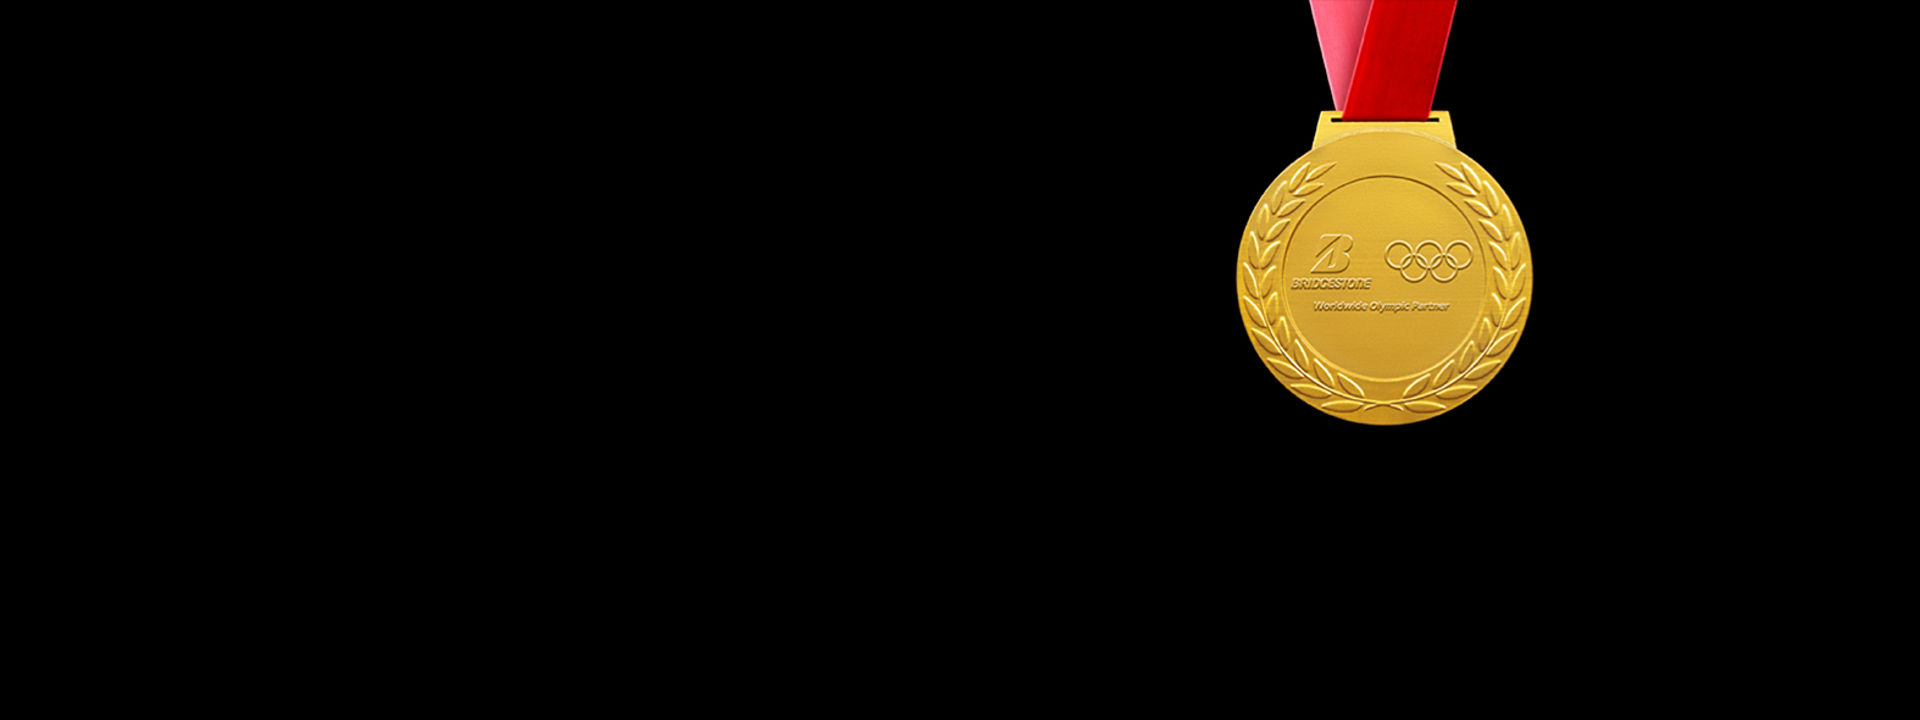 Bridgestone-Logo und Olympische Ringe auf einer Goldmedaille vor einem schwarzem Hintergrund.